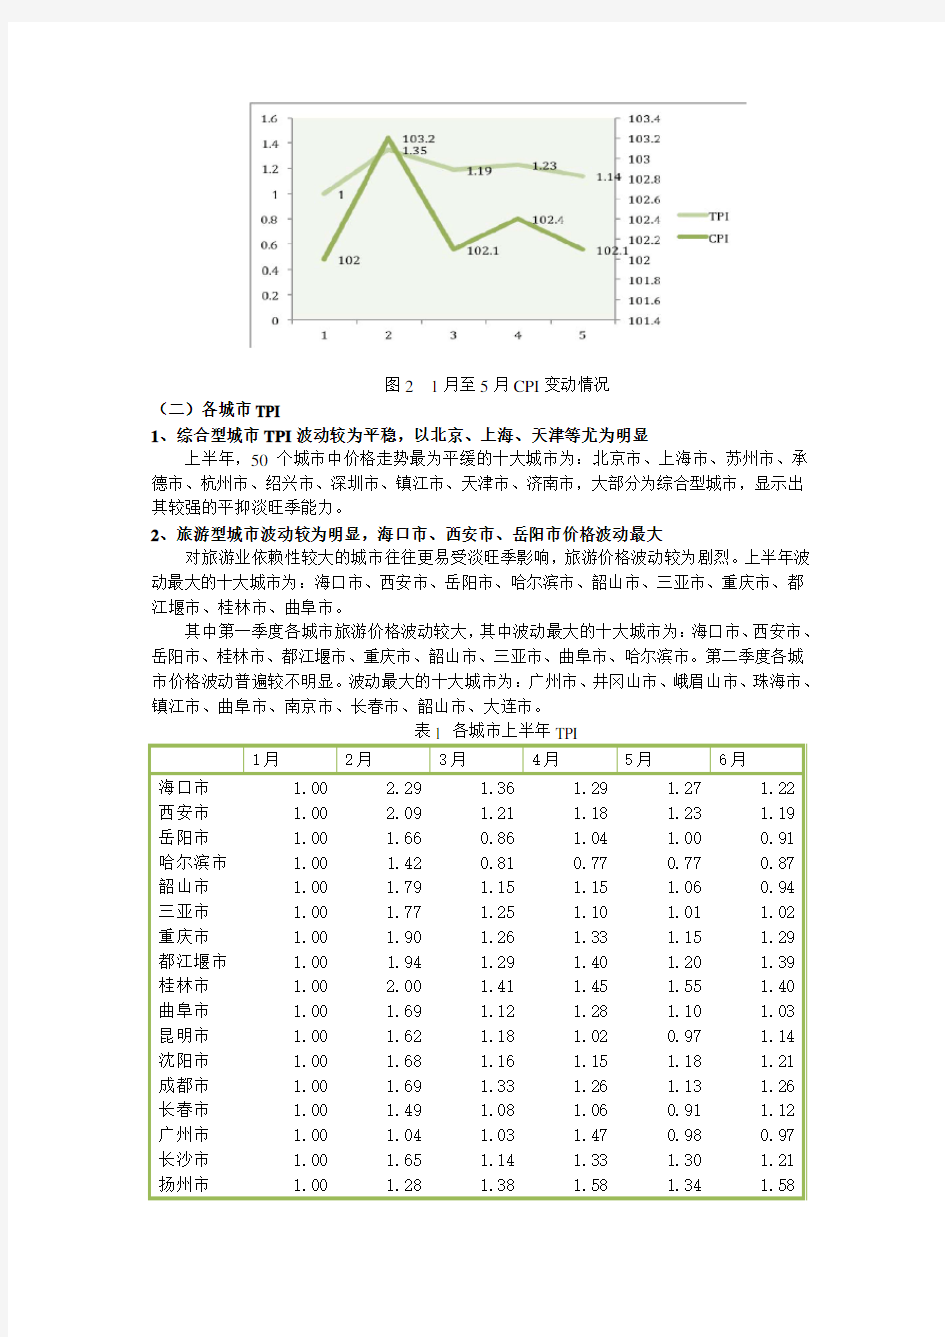 中国旅游消费价格指数(TPI)监测报告(2013年NO.1)